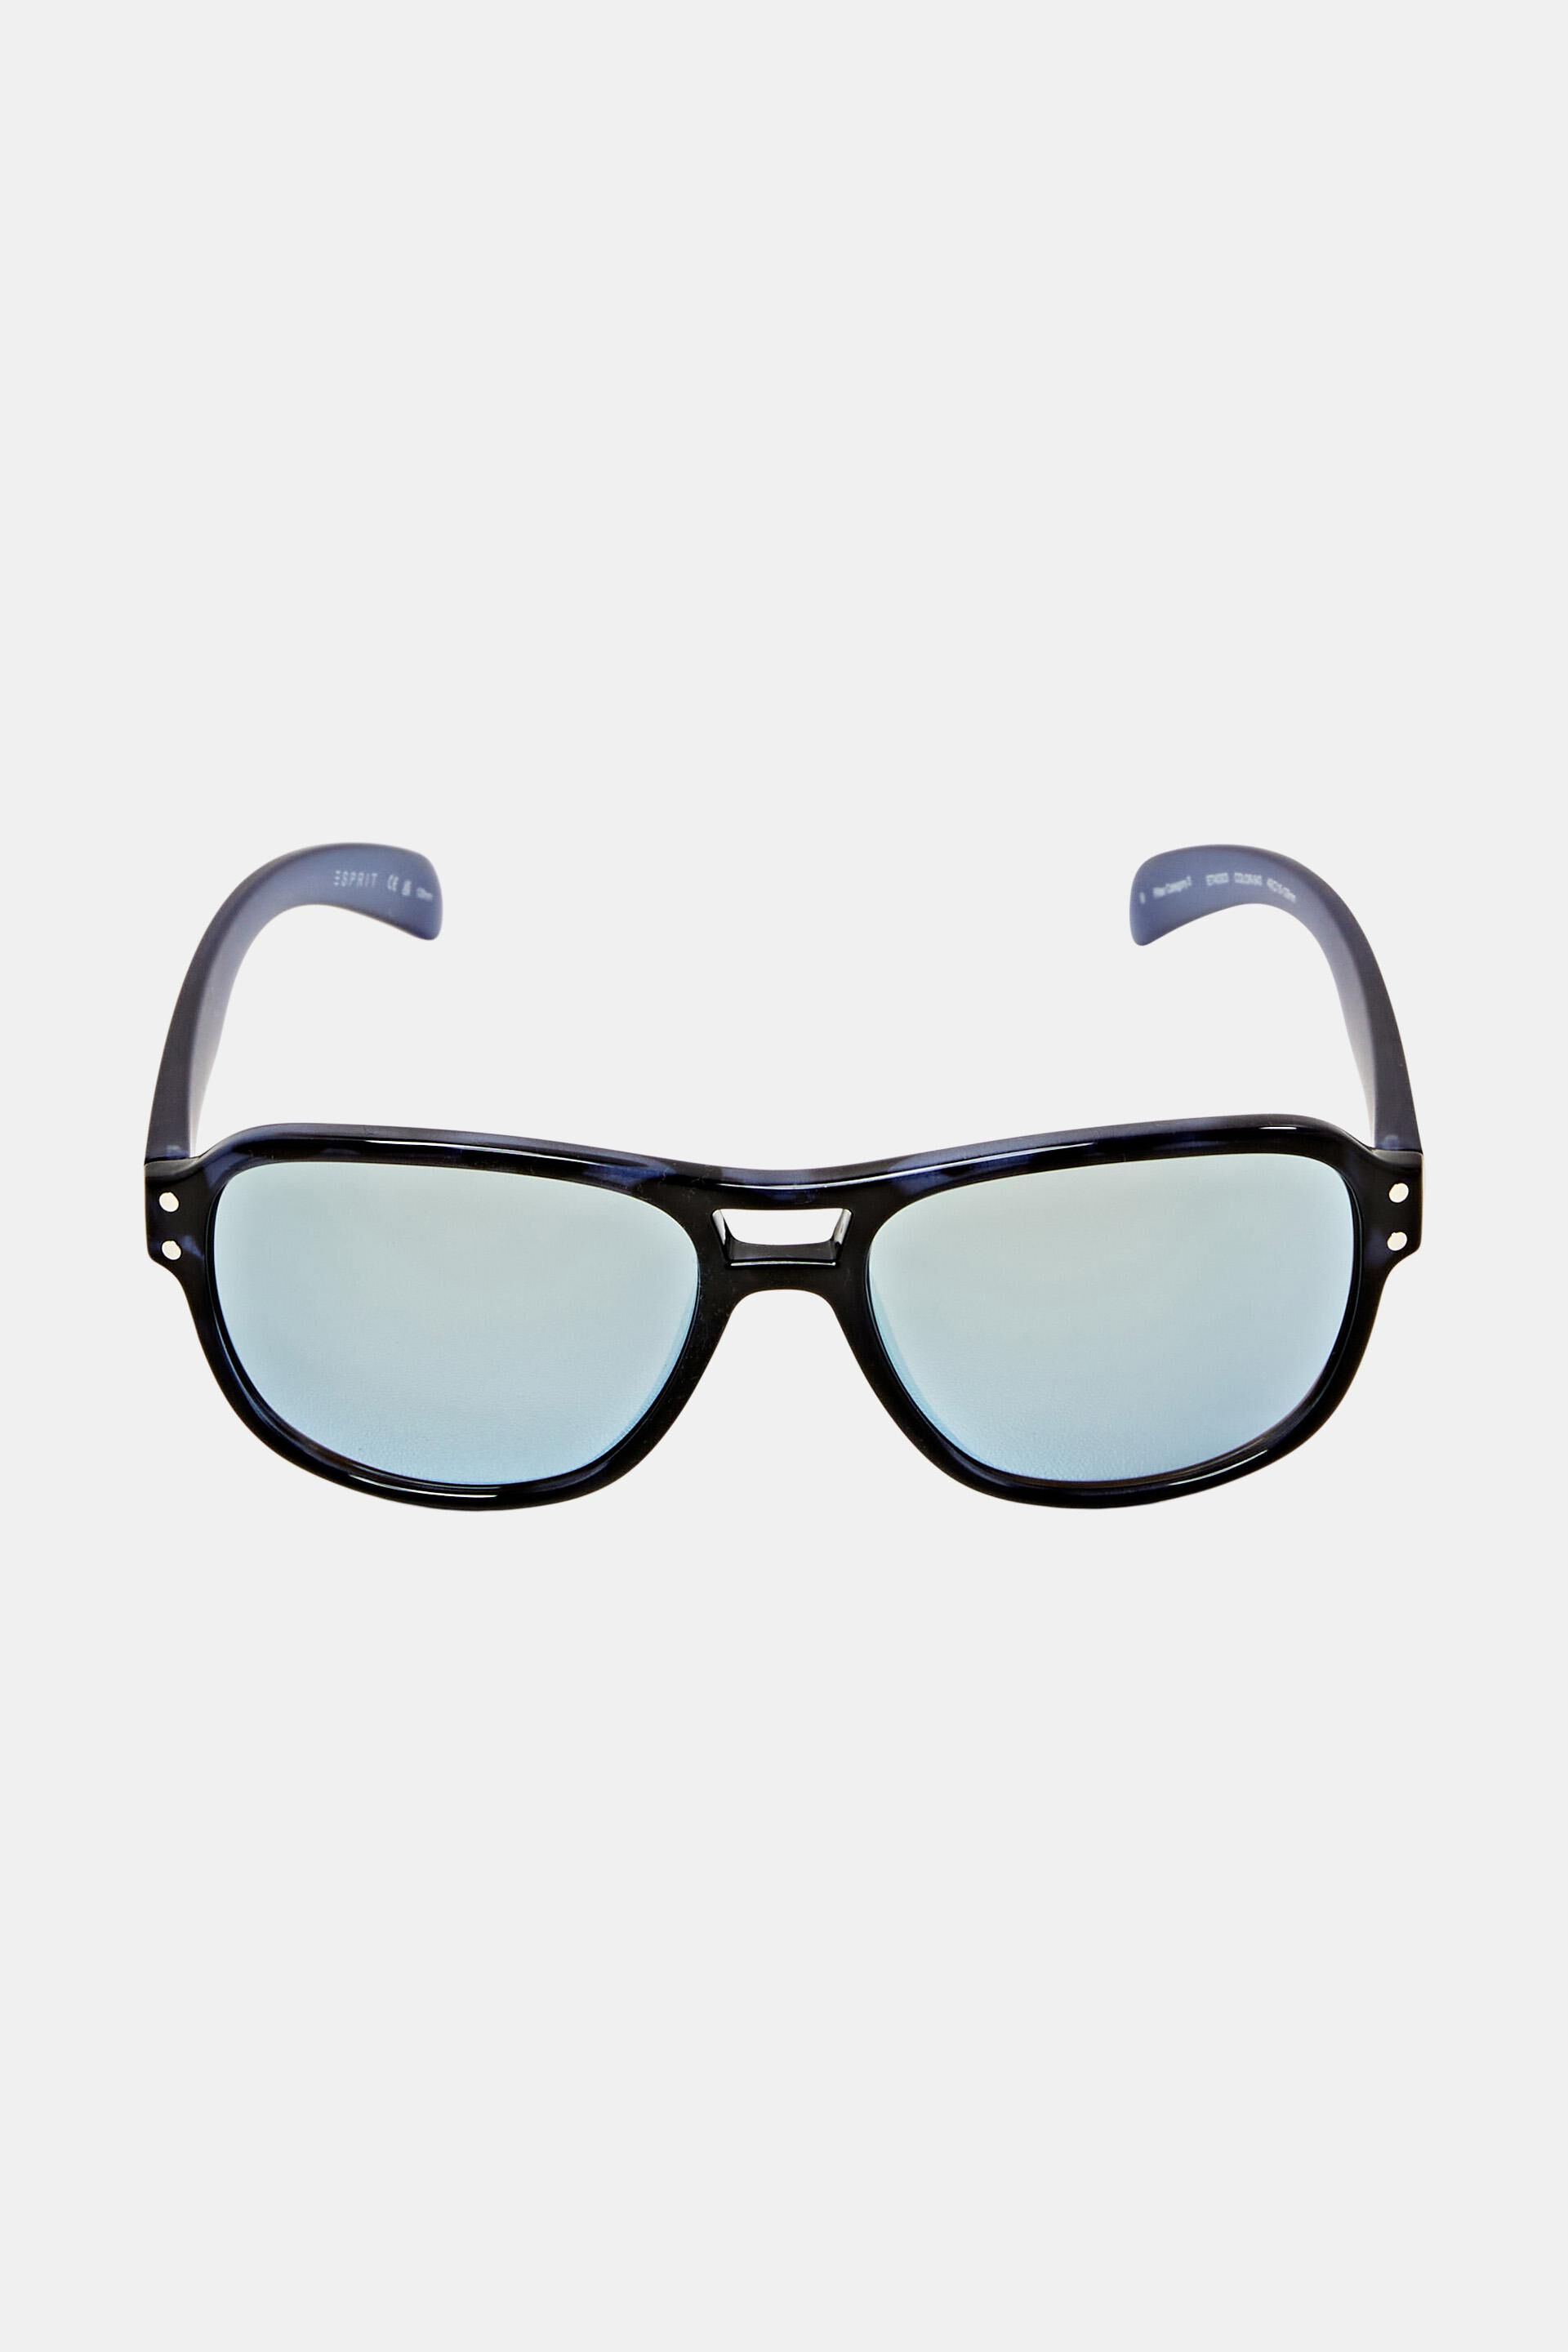 Esprit Outlet Kids' sunglasses